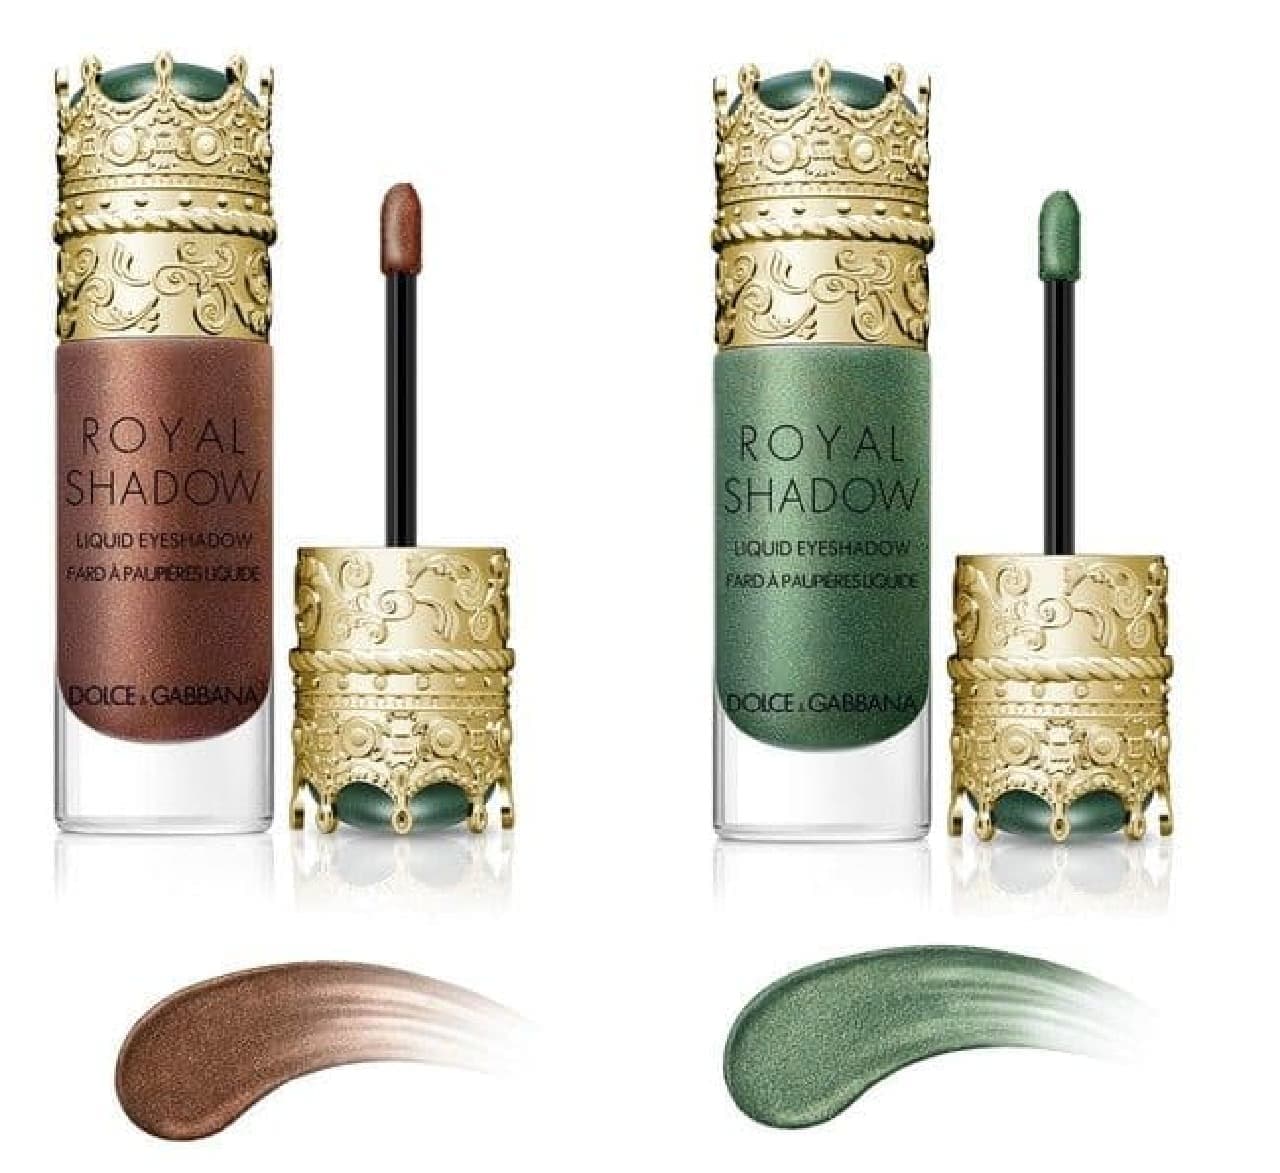 Dolce & Gabbana "Royal Shadow Liquid Eyeshadow"